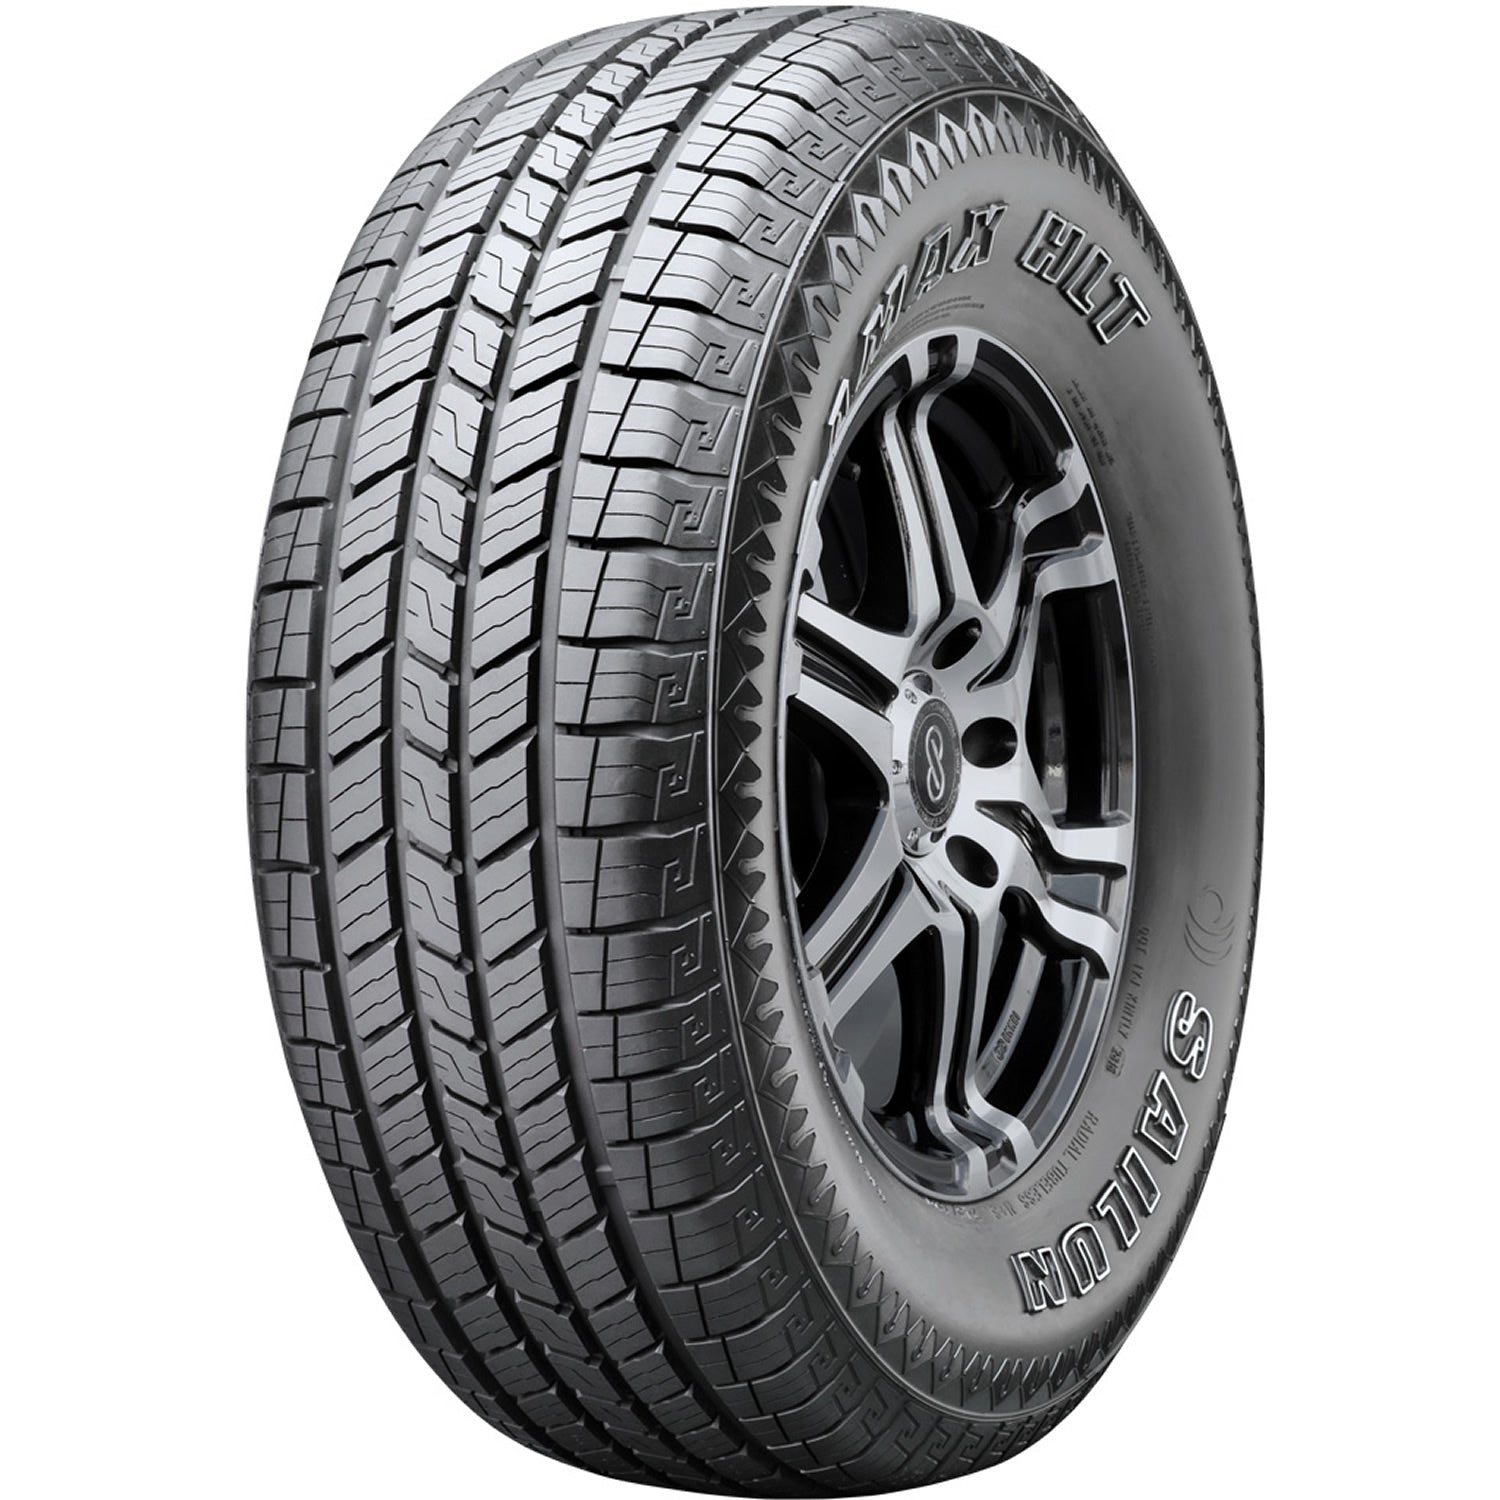 SAILUN TERRAMAX HLT 255/55R18 (29X10.4R 18) Tires